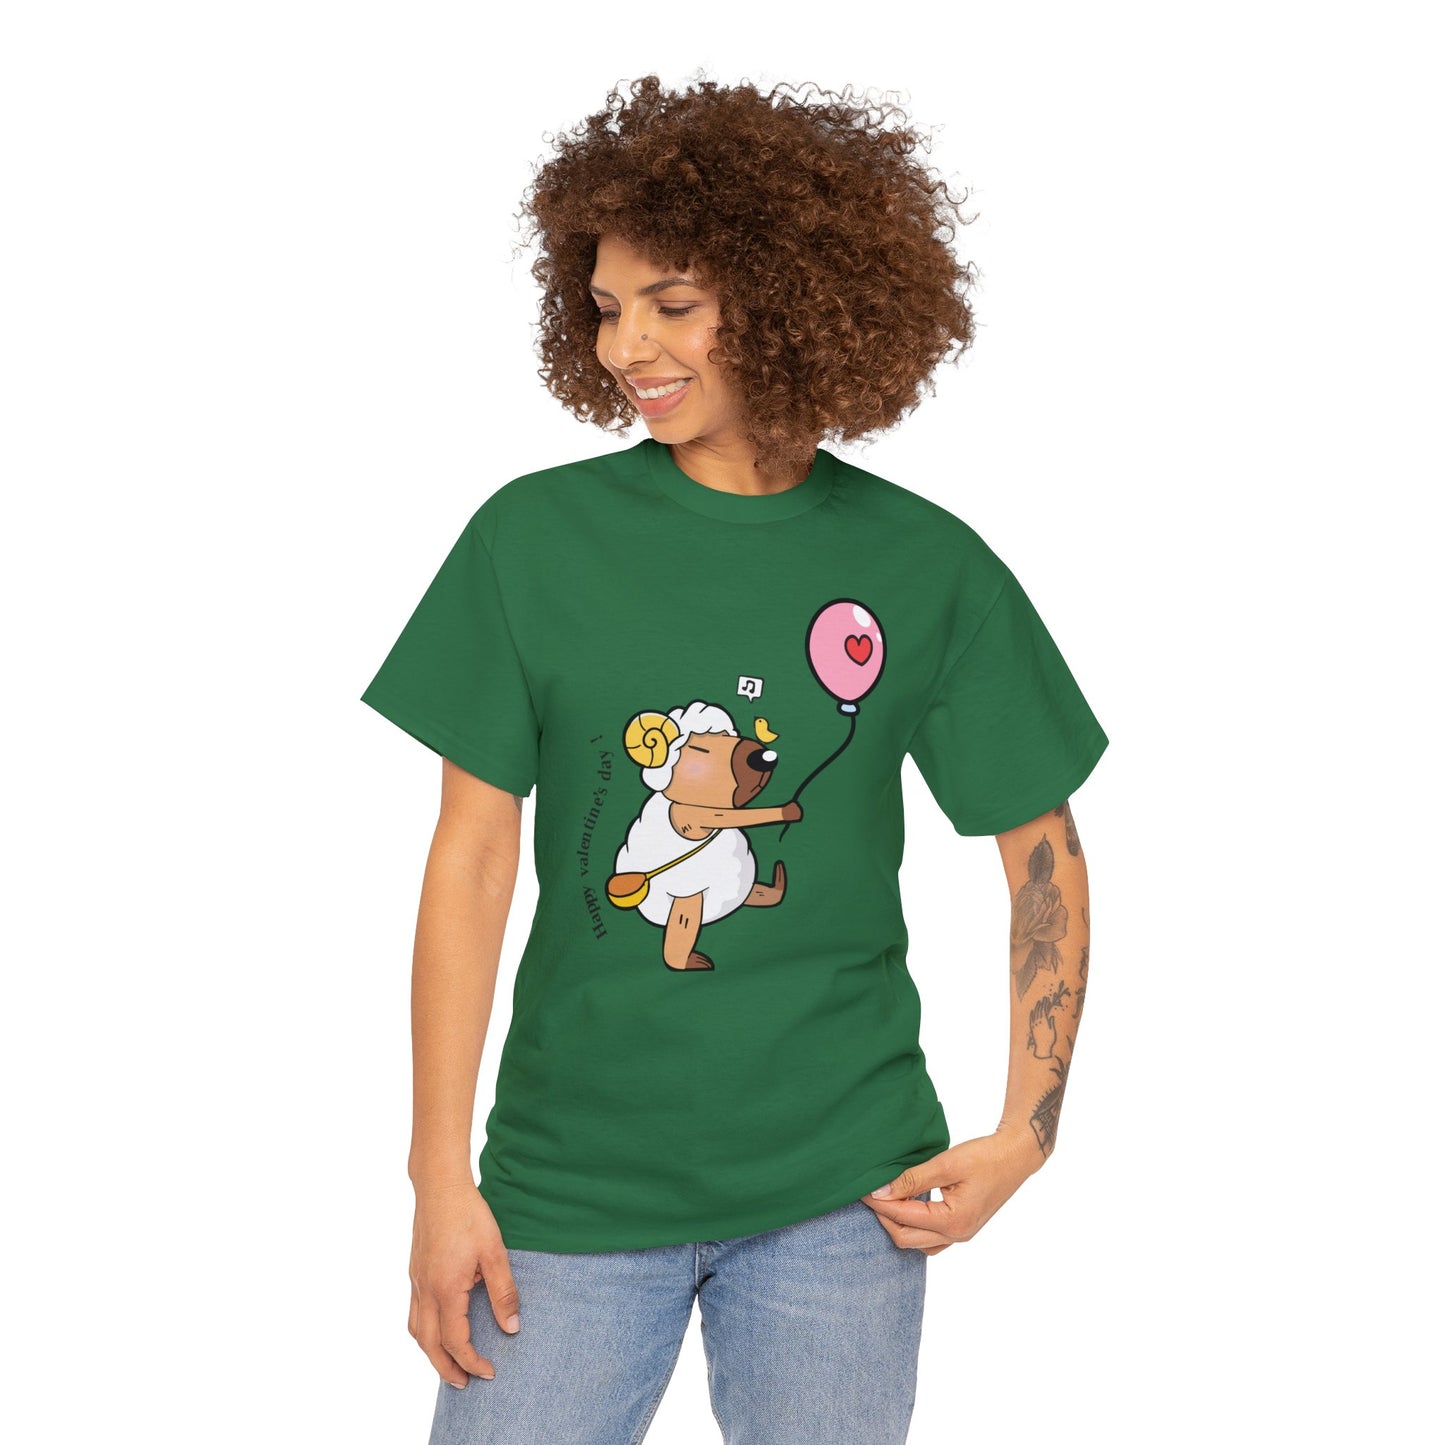 Aries Capybara T-Shirt for Women